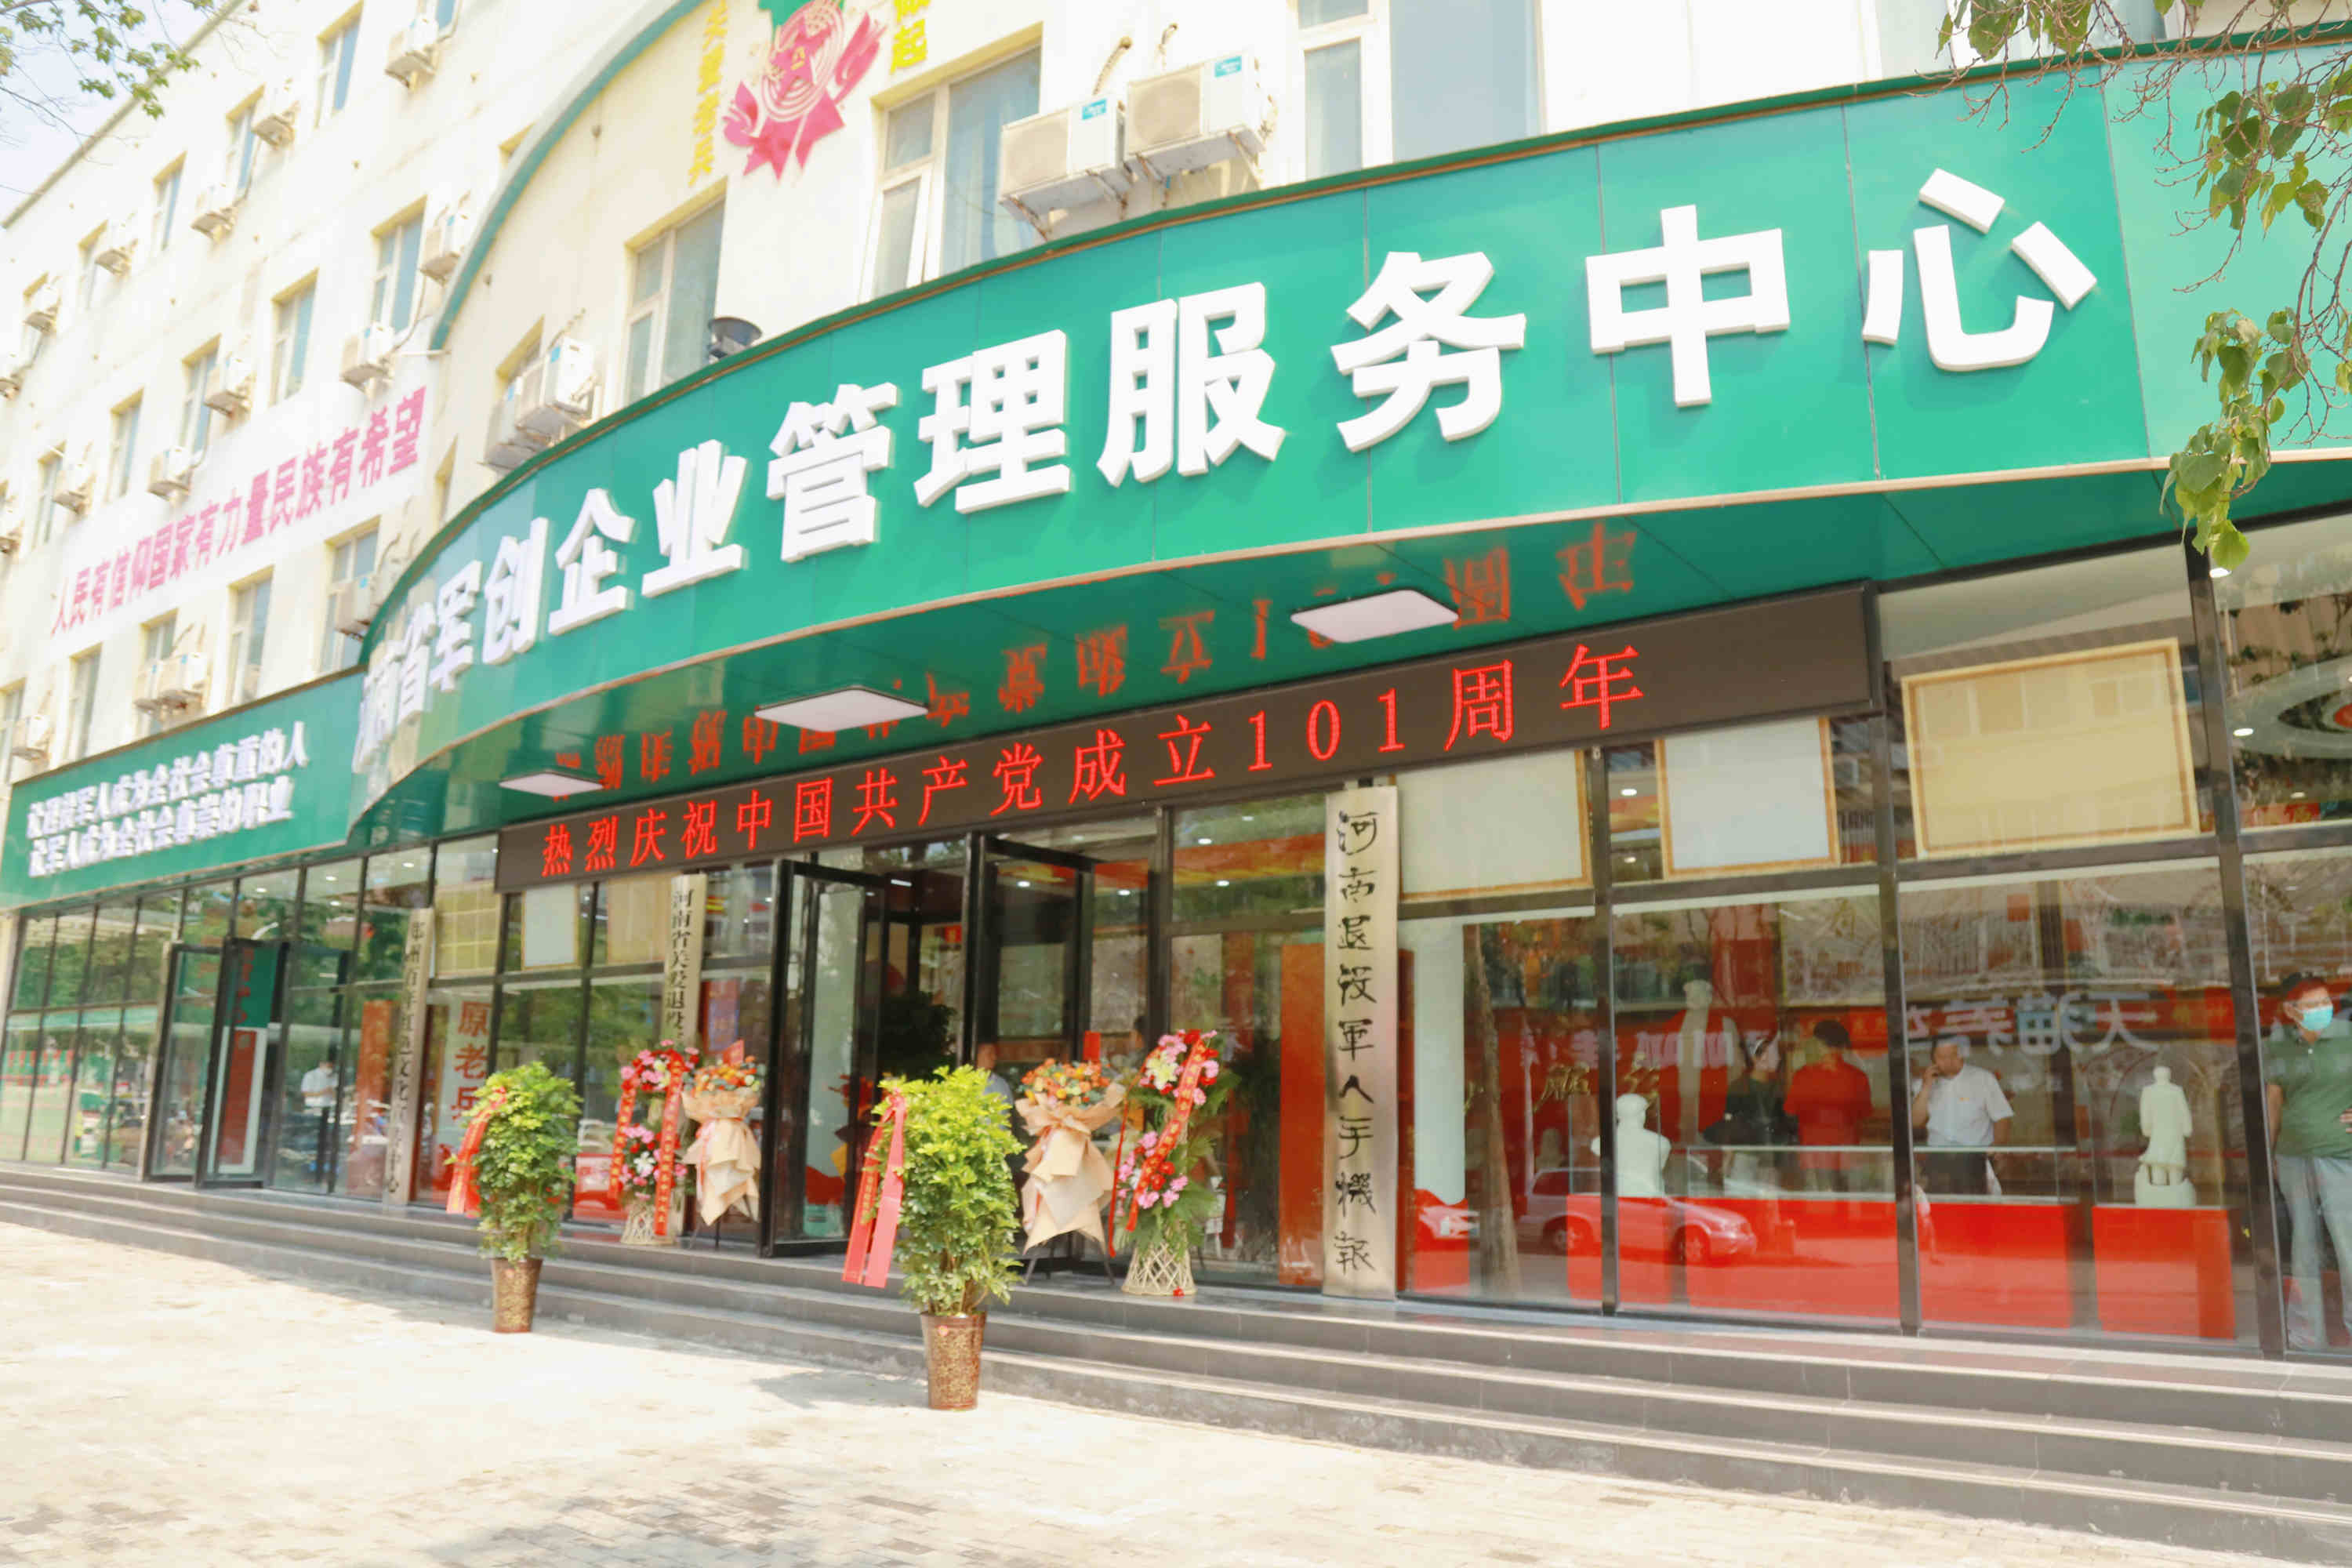 河南省軍創企業管理服務中心在全省設立惠民工作站